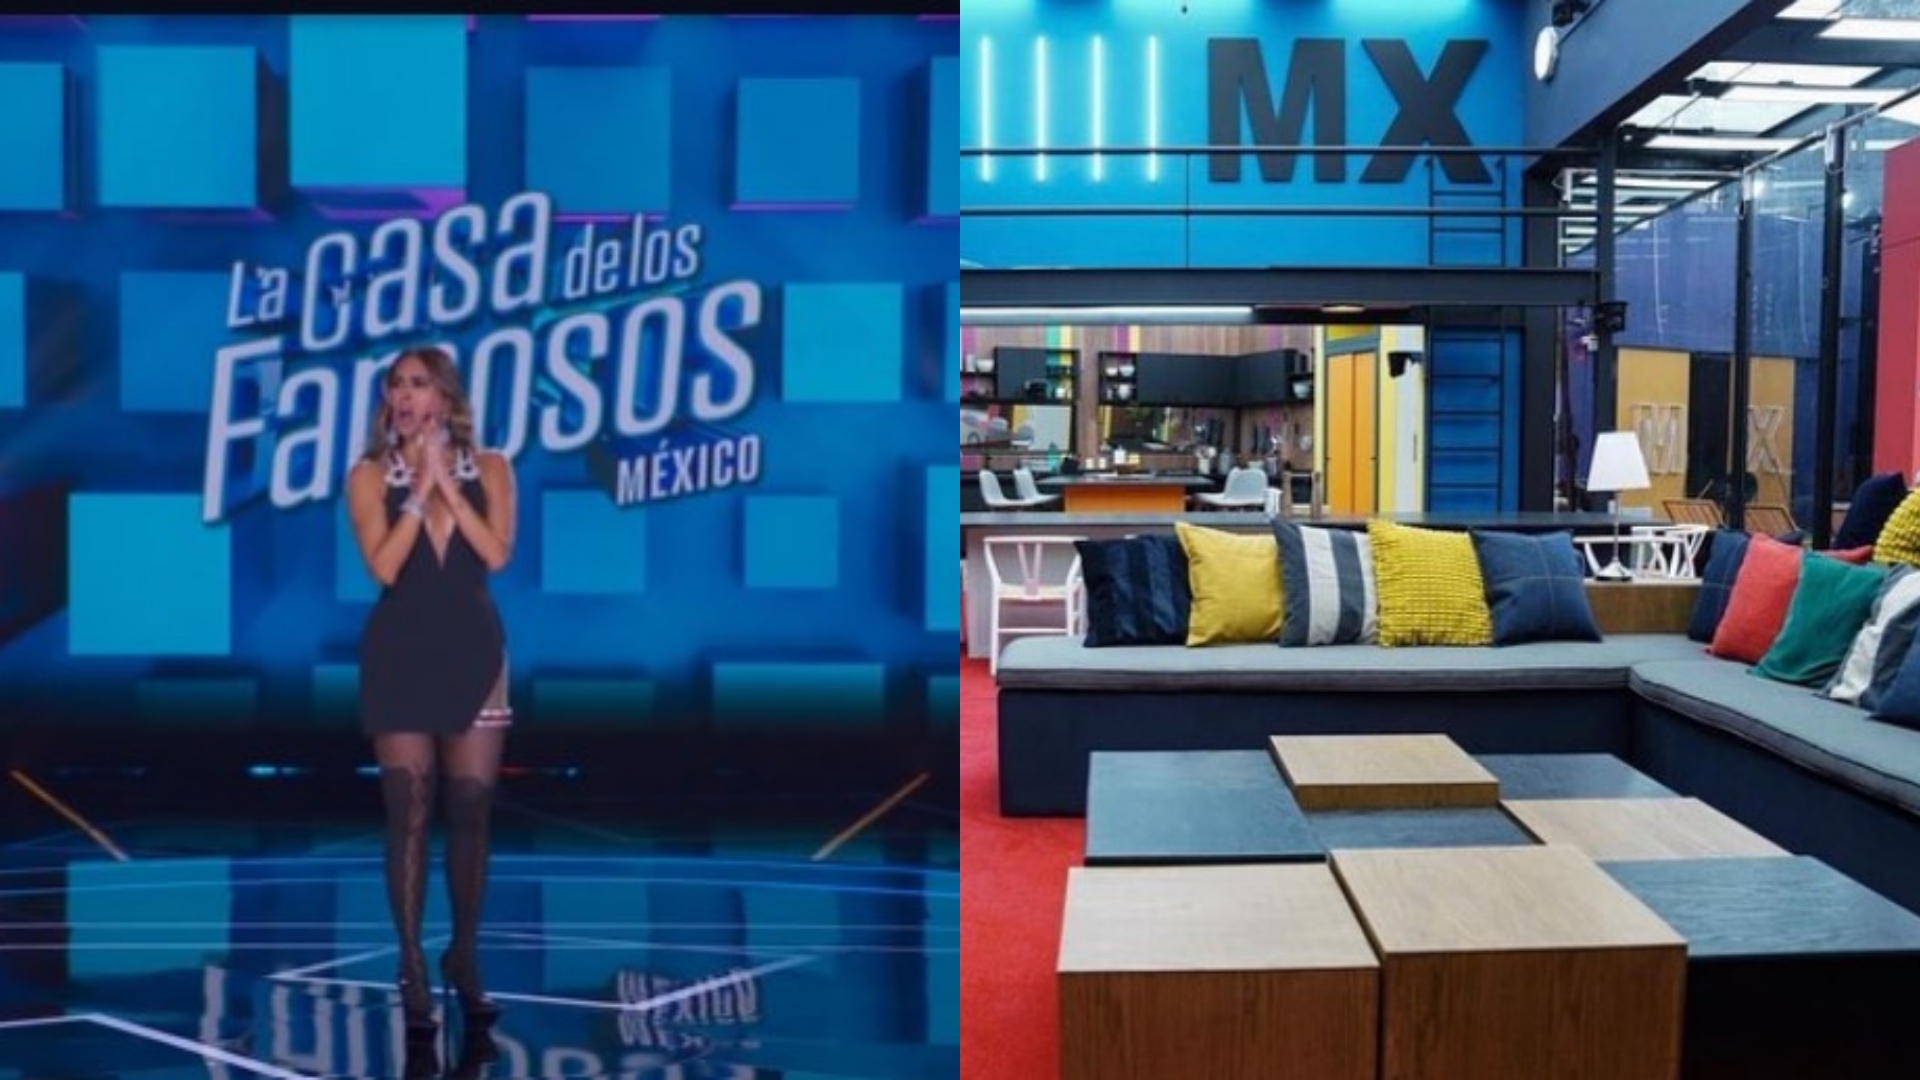 La casa de los famosos México: Bárbara Torres “Excelsa” y Paul Stanley intercambiaron maletas